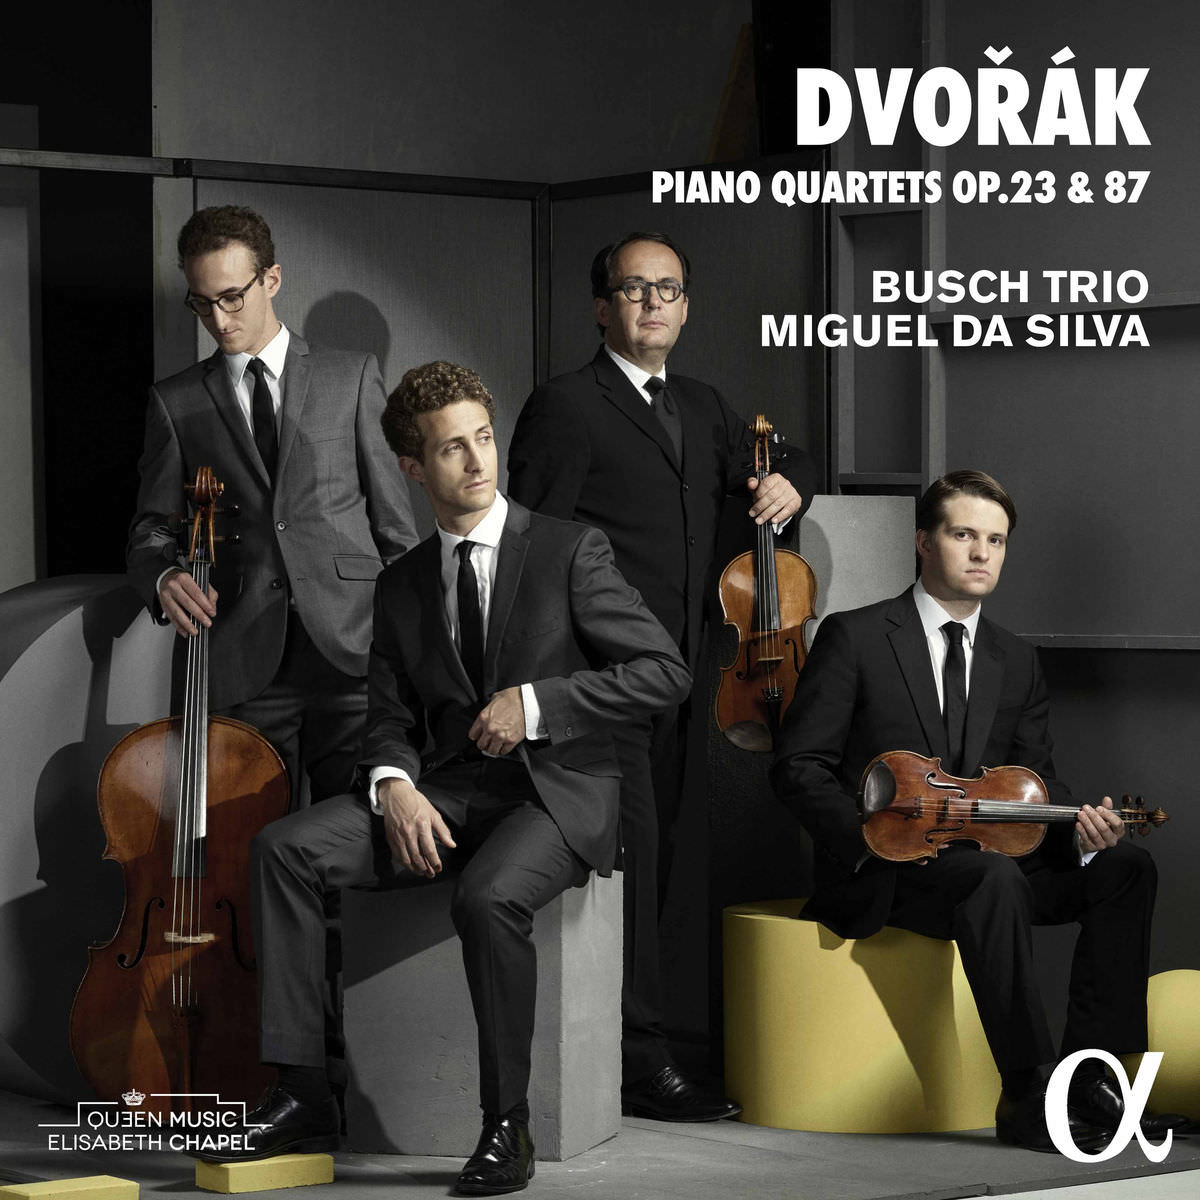 Busch Trio & Miguel Da Silva - Dvorak Piano Quartets Nos. 1 & 2 (2017) [Qobuz FLAC 24bit/96kHz]